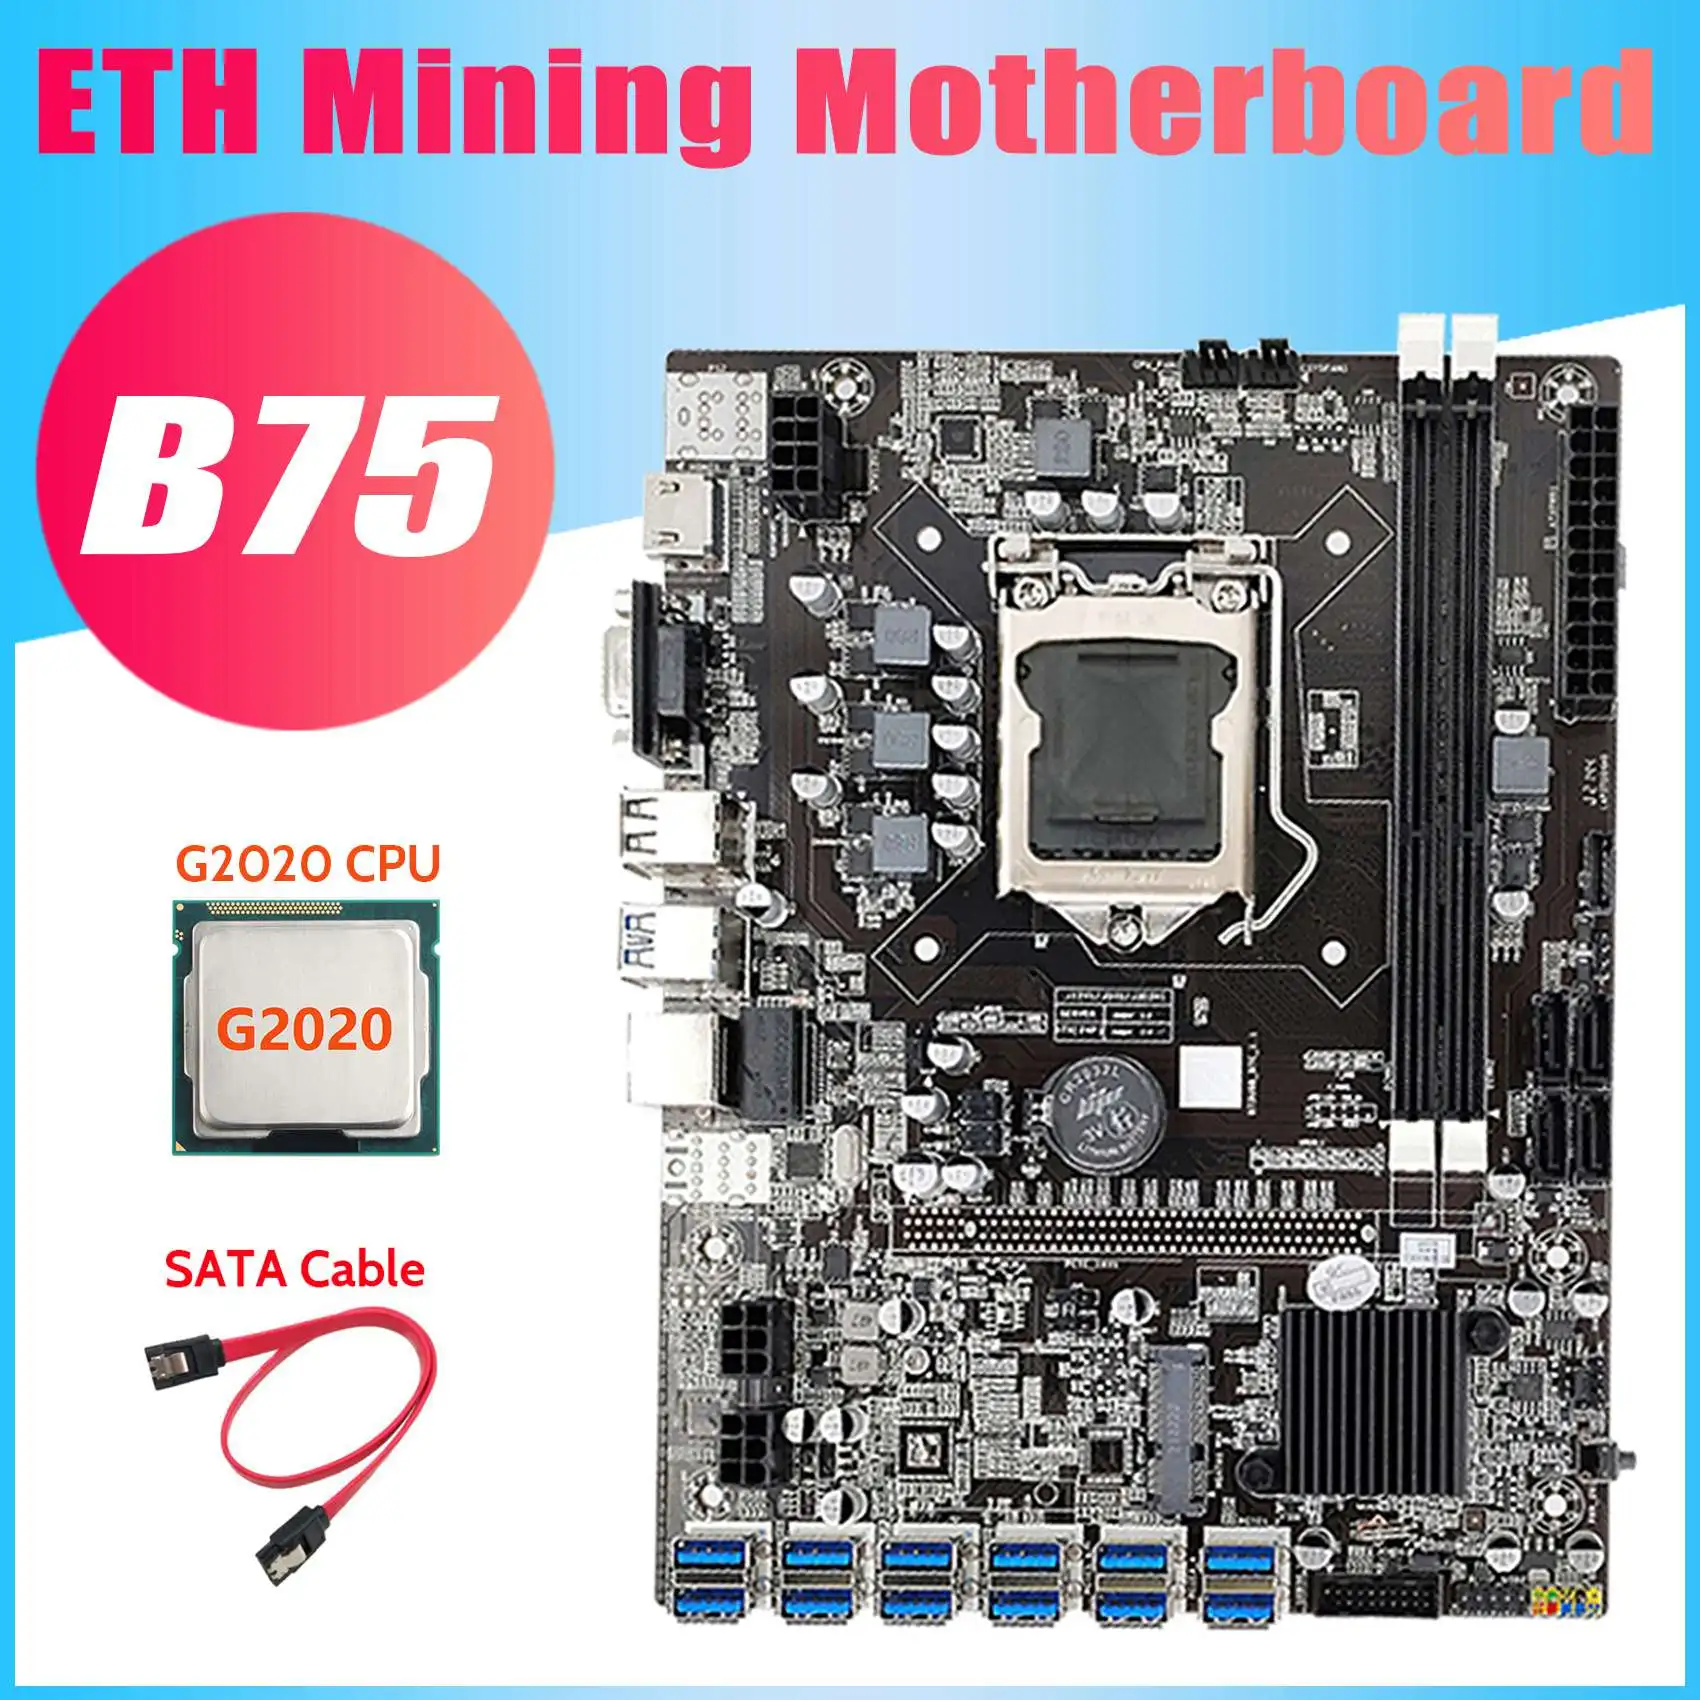 

Материнская плата B75 USB ETH для майнинга + ЦП G2020 + кабель SATA 12xpcie к USB3.0 DDR3 MSATA LGA1155 B75 материнская плата для майнинга BTC